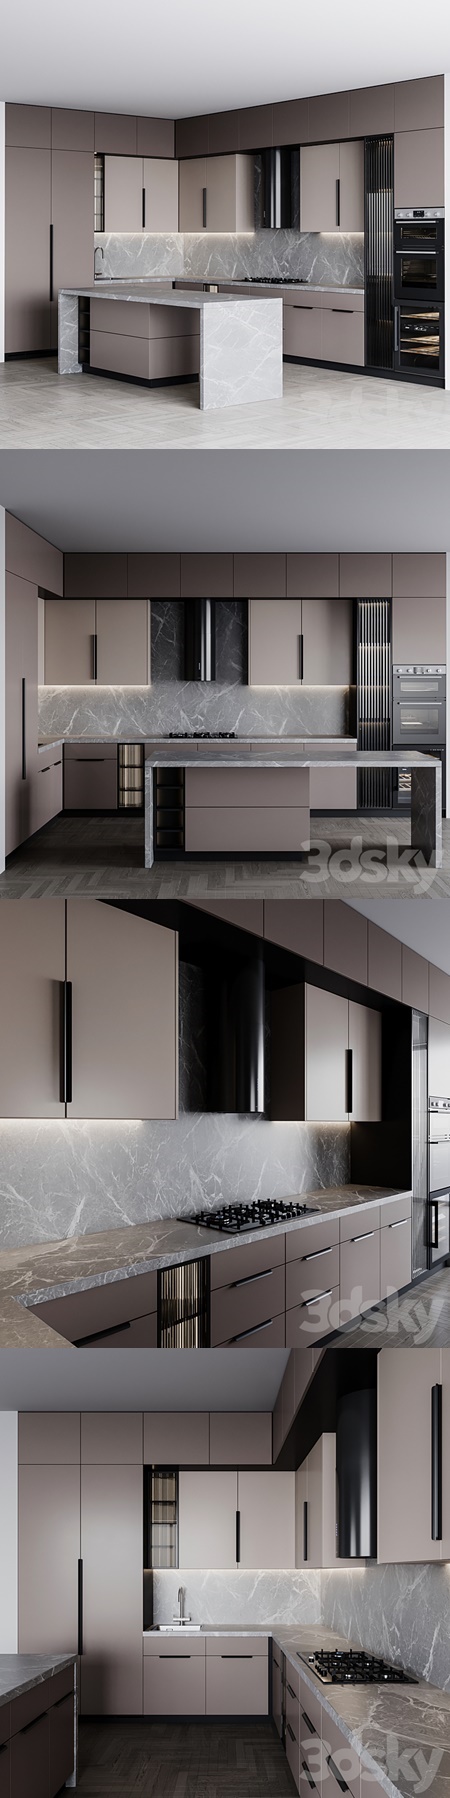 Kitchen Modern152